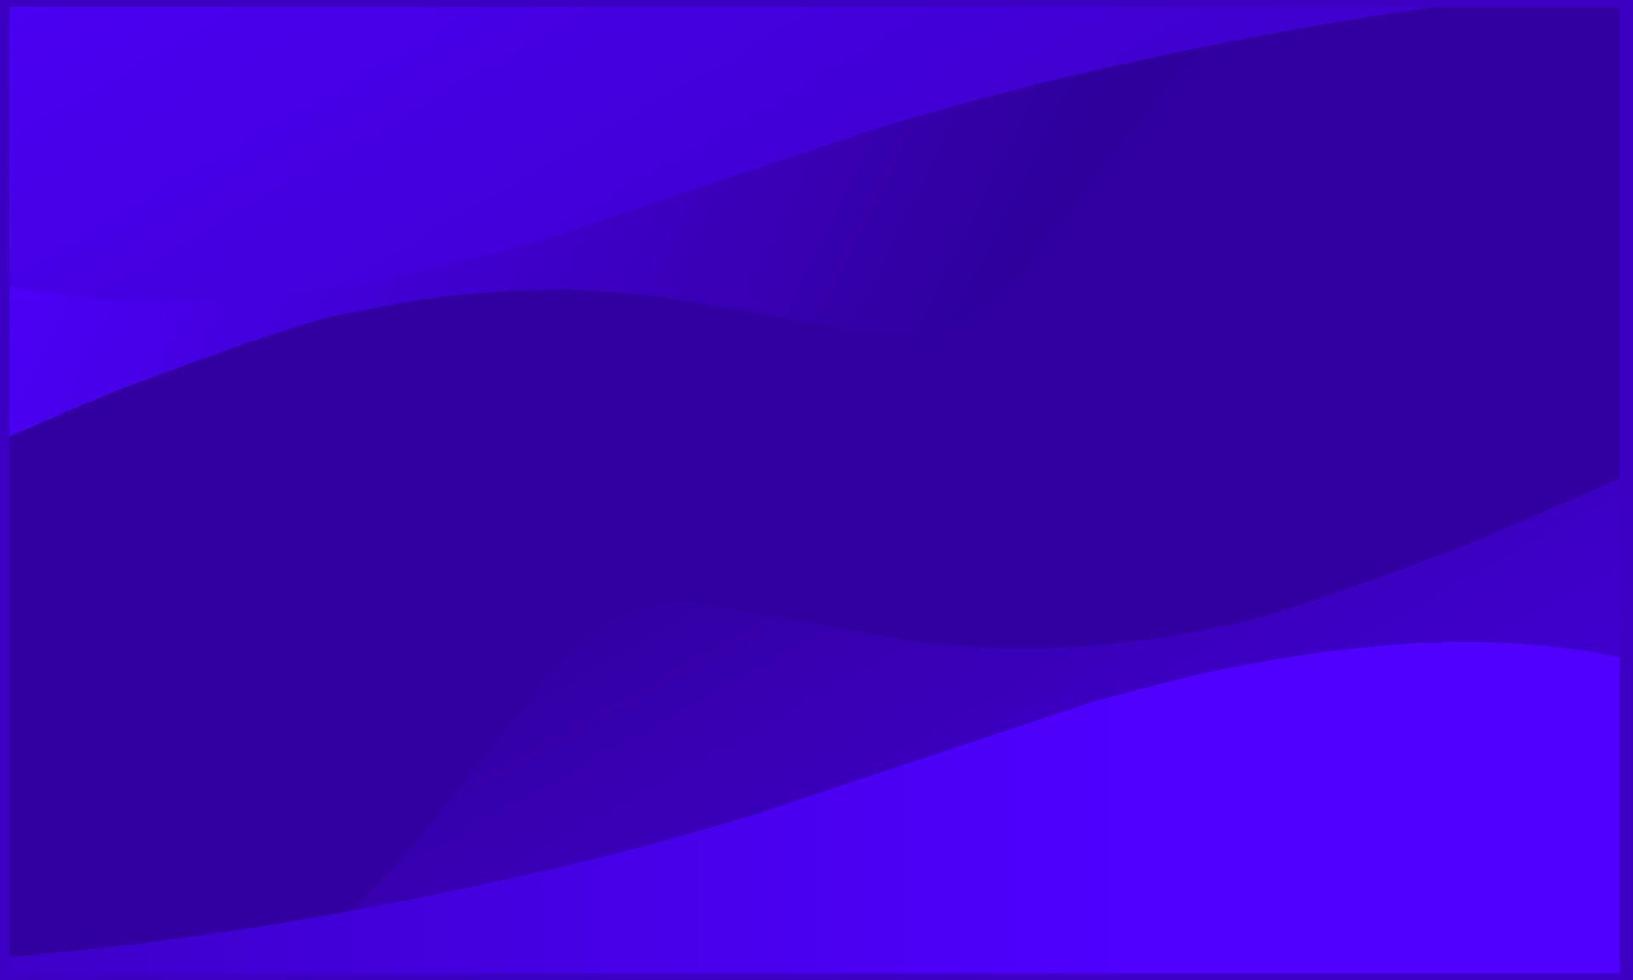 fundo moderno gráfico futurista abstrato. fundo azul com listras. textura abstrata do projeto do fundo do vetor, poster escuro, ilustração do vetor do fundo da bandeira azul.